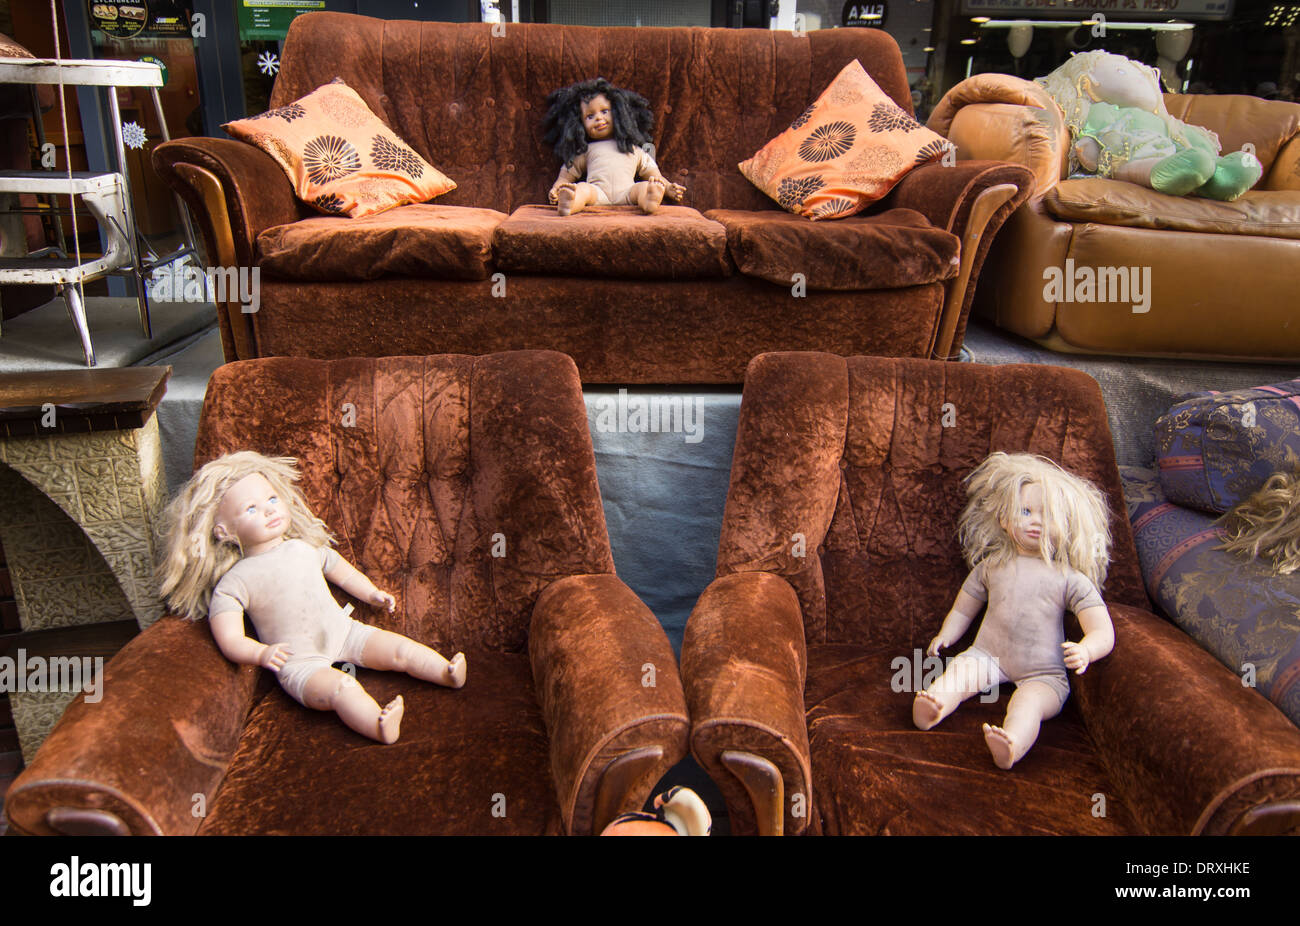 Brick Lane à vendre des poupées poupées étranges sur des sofas Banque D'Images